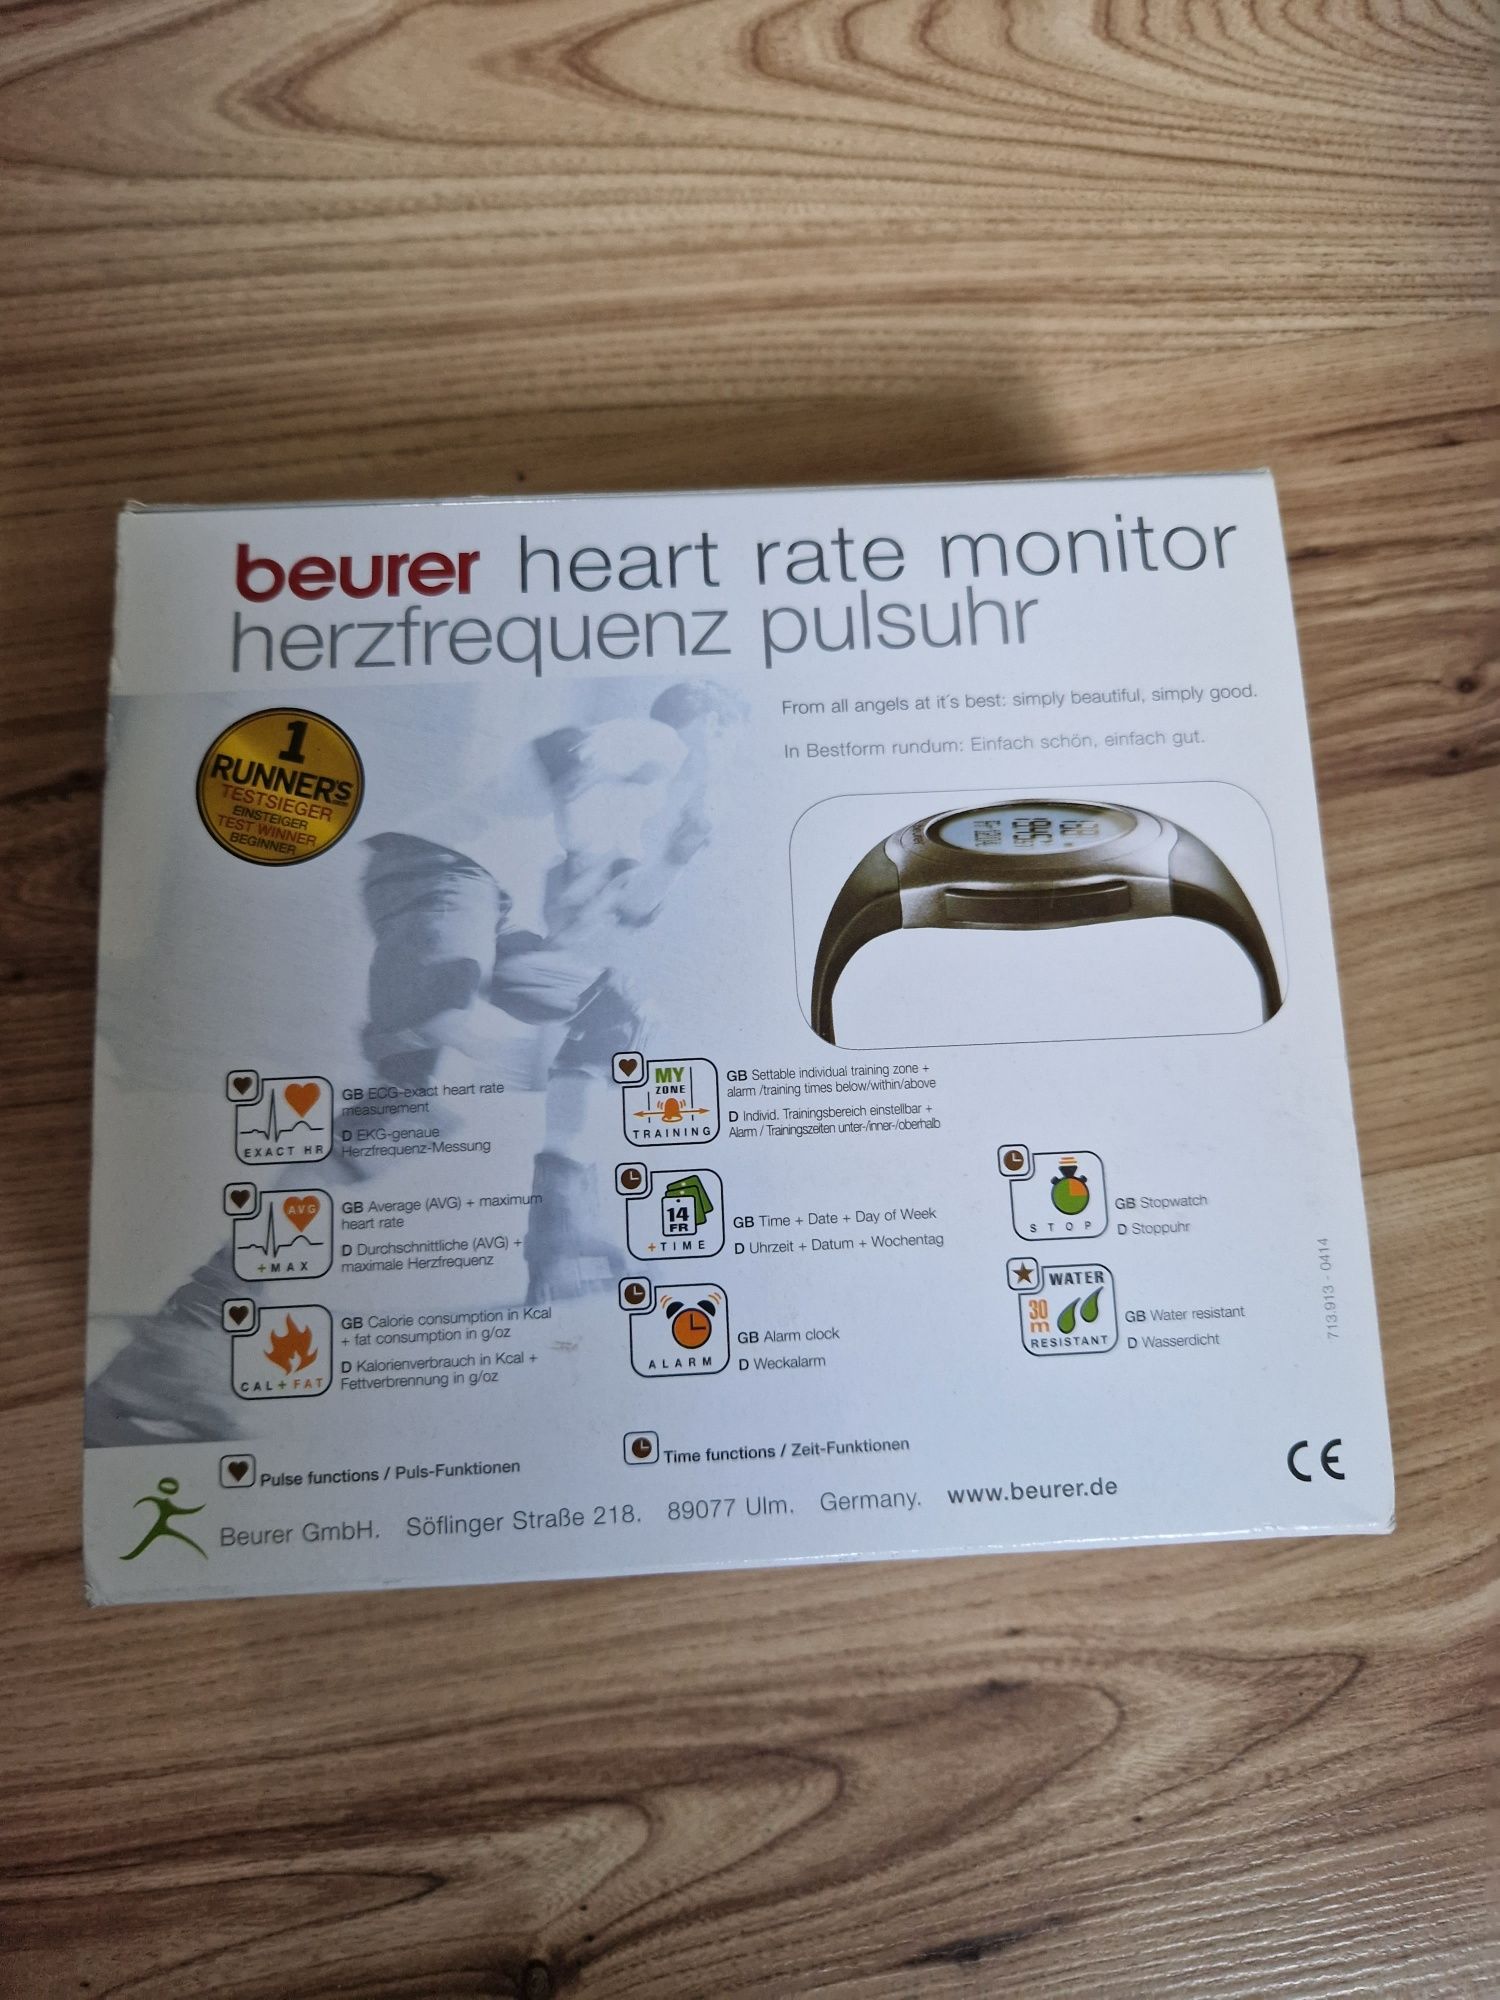 Bateria heart rate monitor uderzeń serca i pulsu